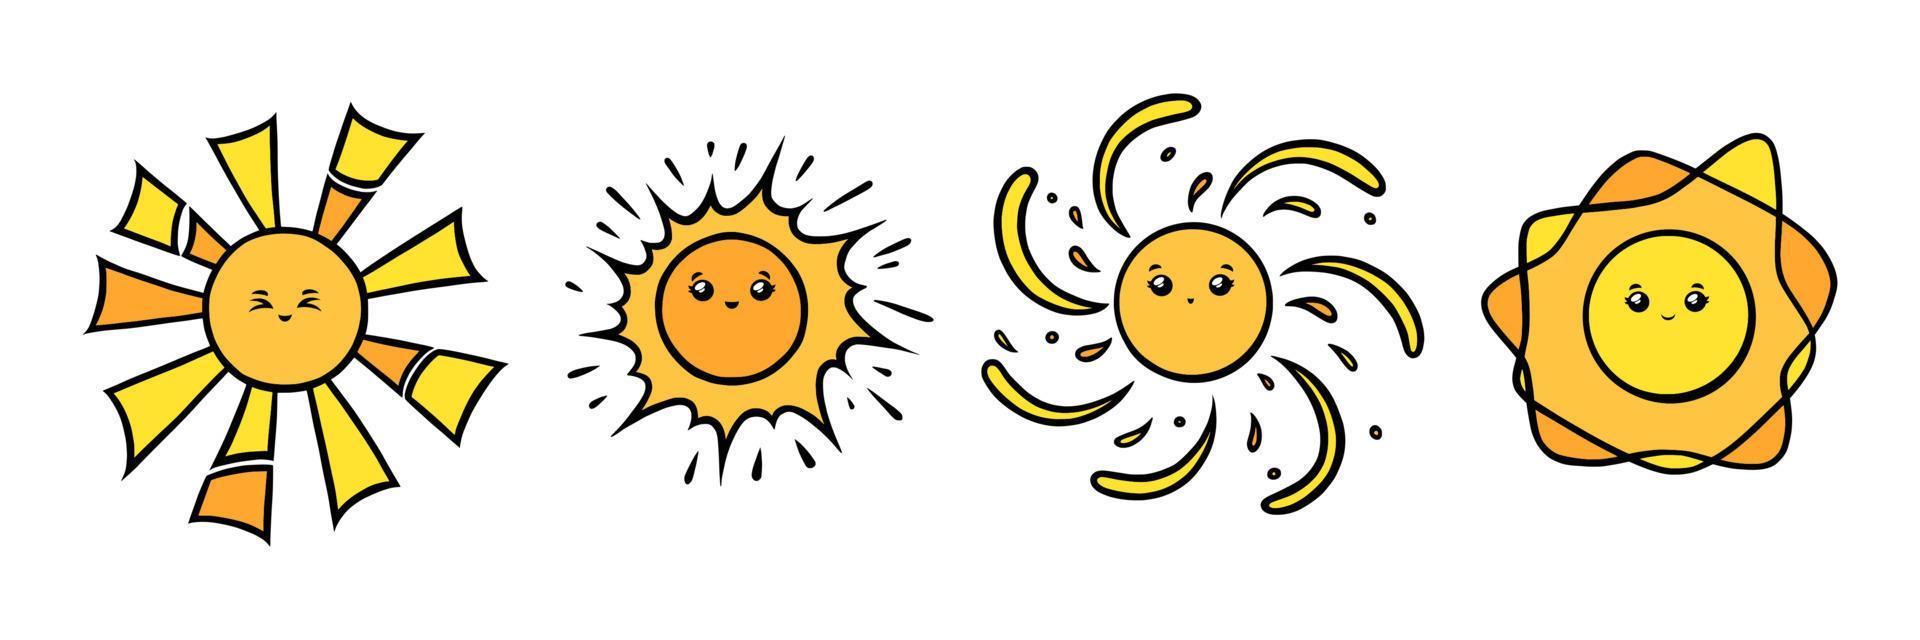 kawaii Sonnenfiguren mit Augen und Lächeln. gelbe sonne lächelnde gesichter im gekritzelstil. Schwarz-Weiß-Vektor-Illustration vektor